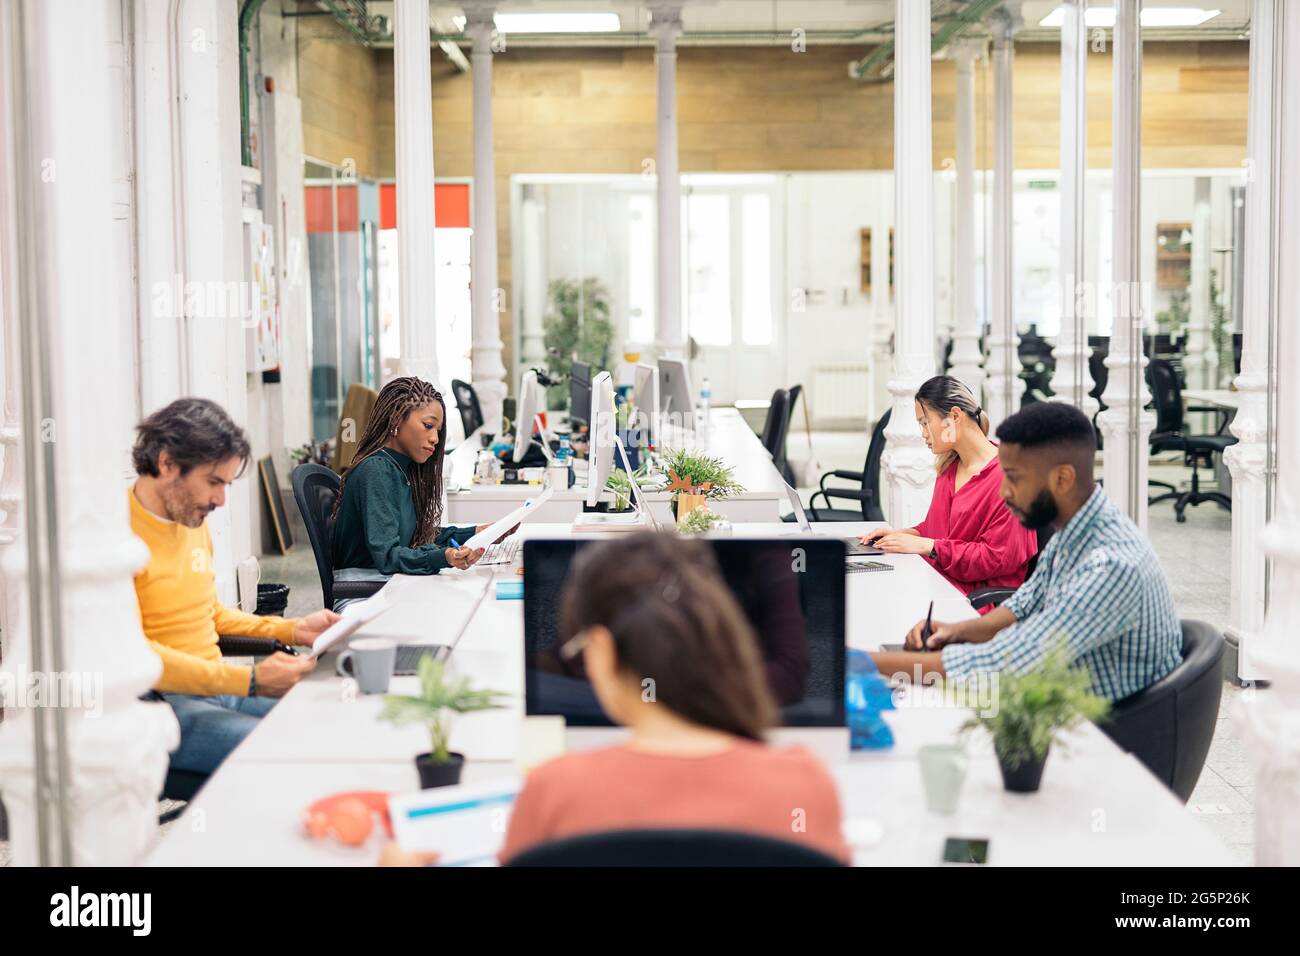 Multikulturelle Büroangestellte, die auf einem großen Schreibtisch sitzen und selbstständig arbeiten. Co-Working-Konzept. Stockfoto